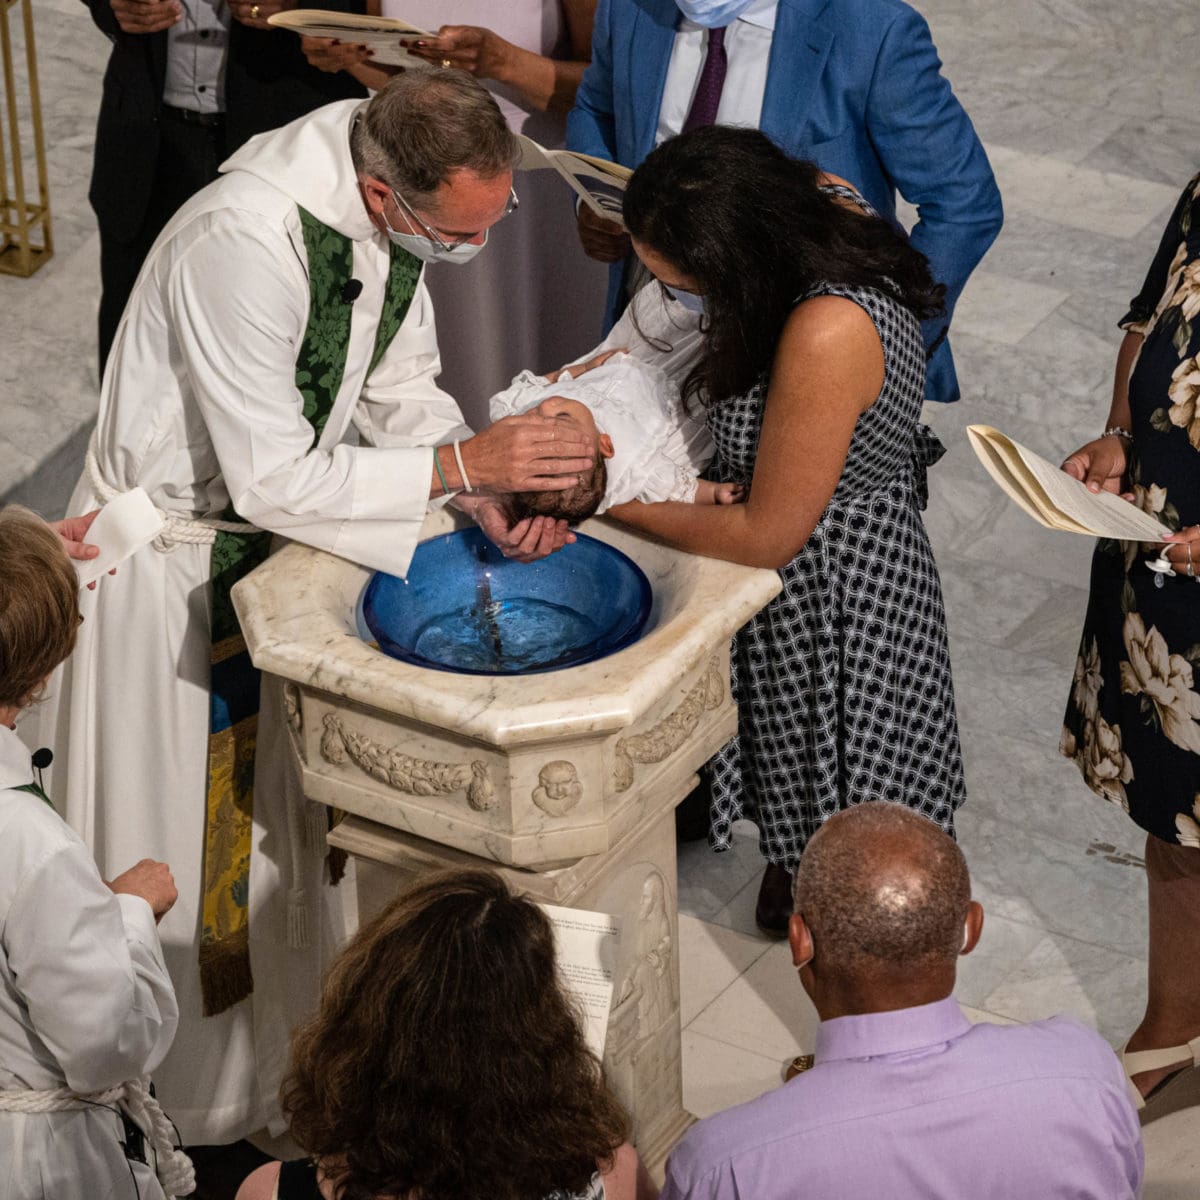 Image of priest baptizing baby.